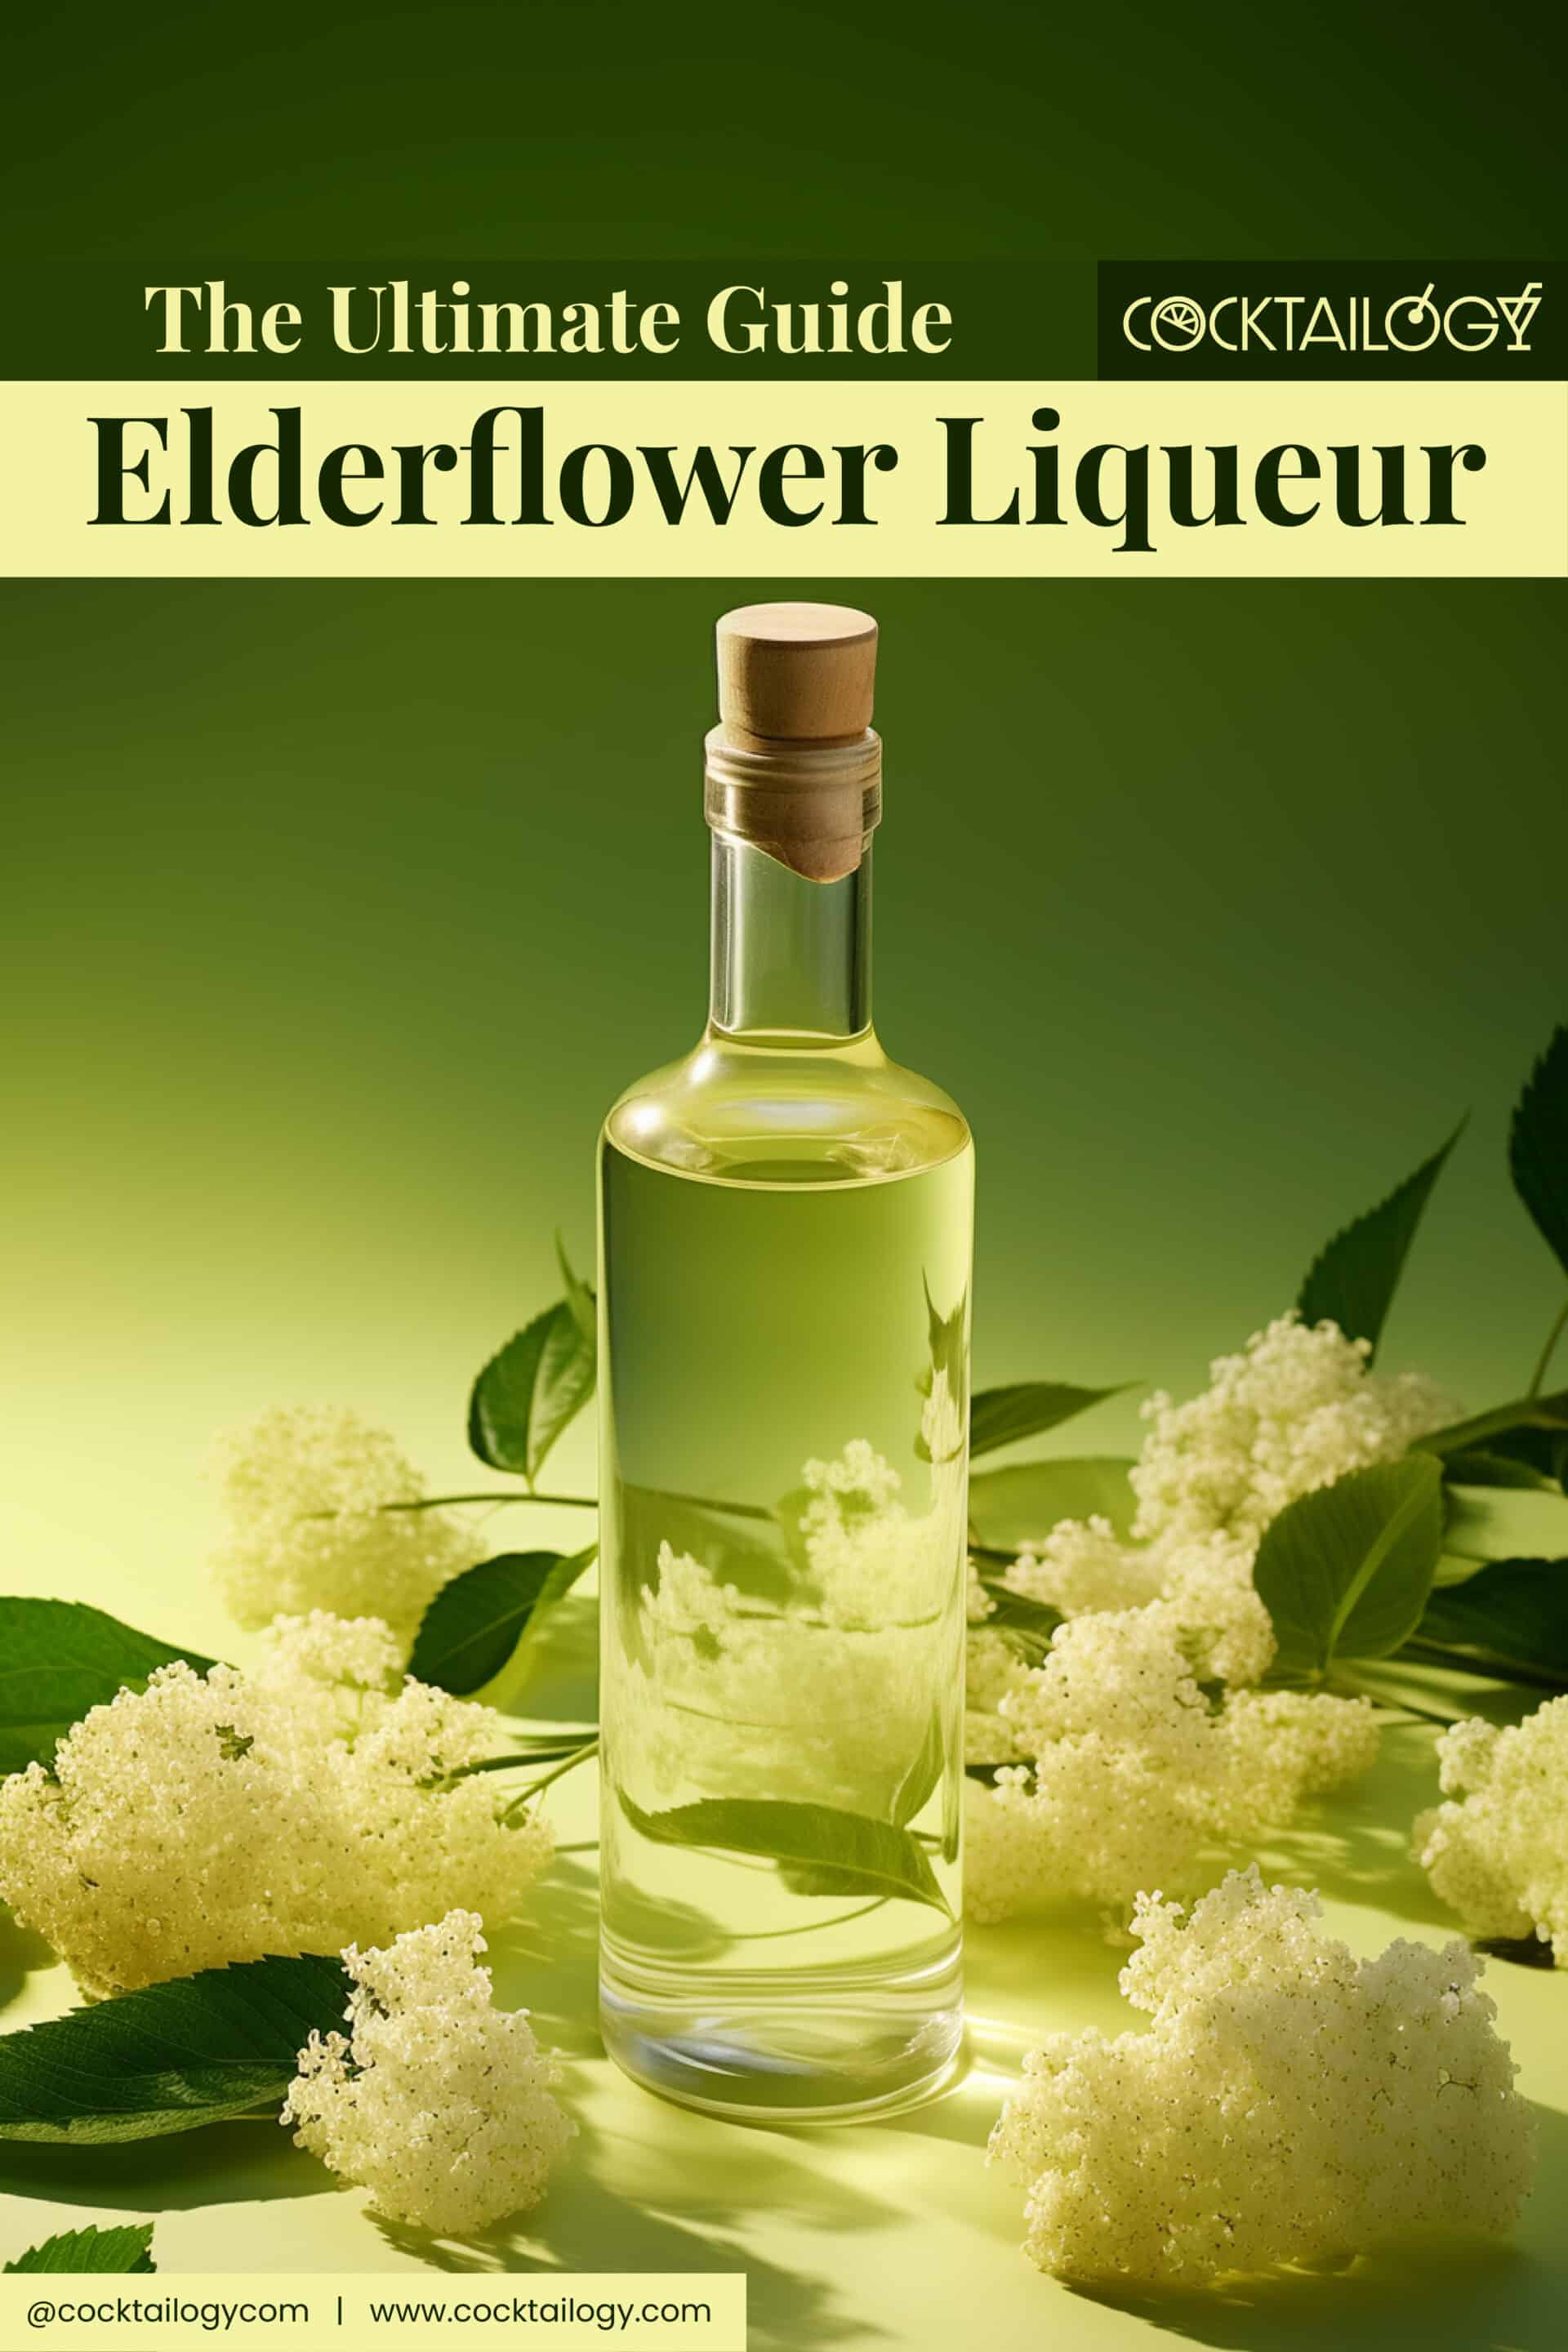 5 Floral Liqueurs Similar to St. Germain Elderflower Liqueur